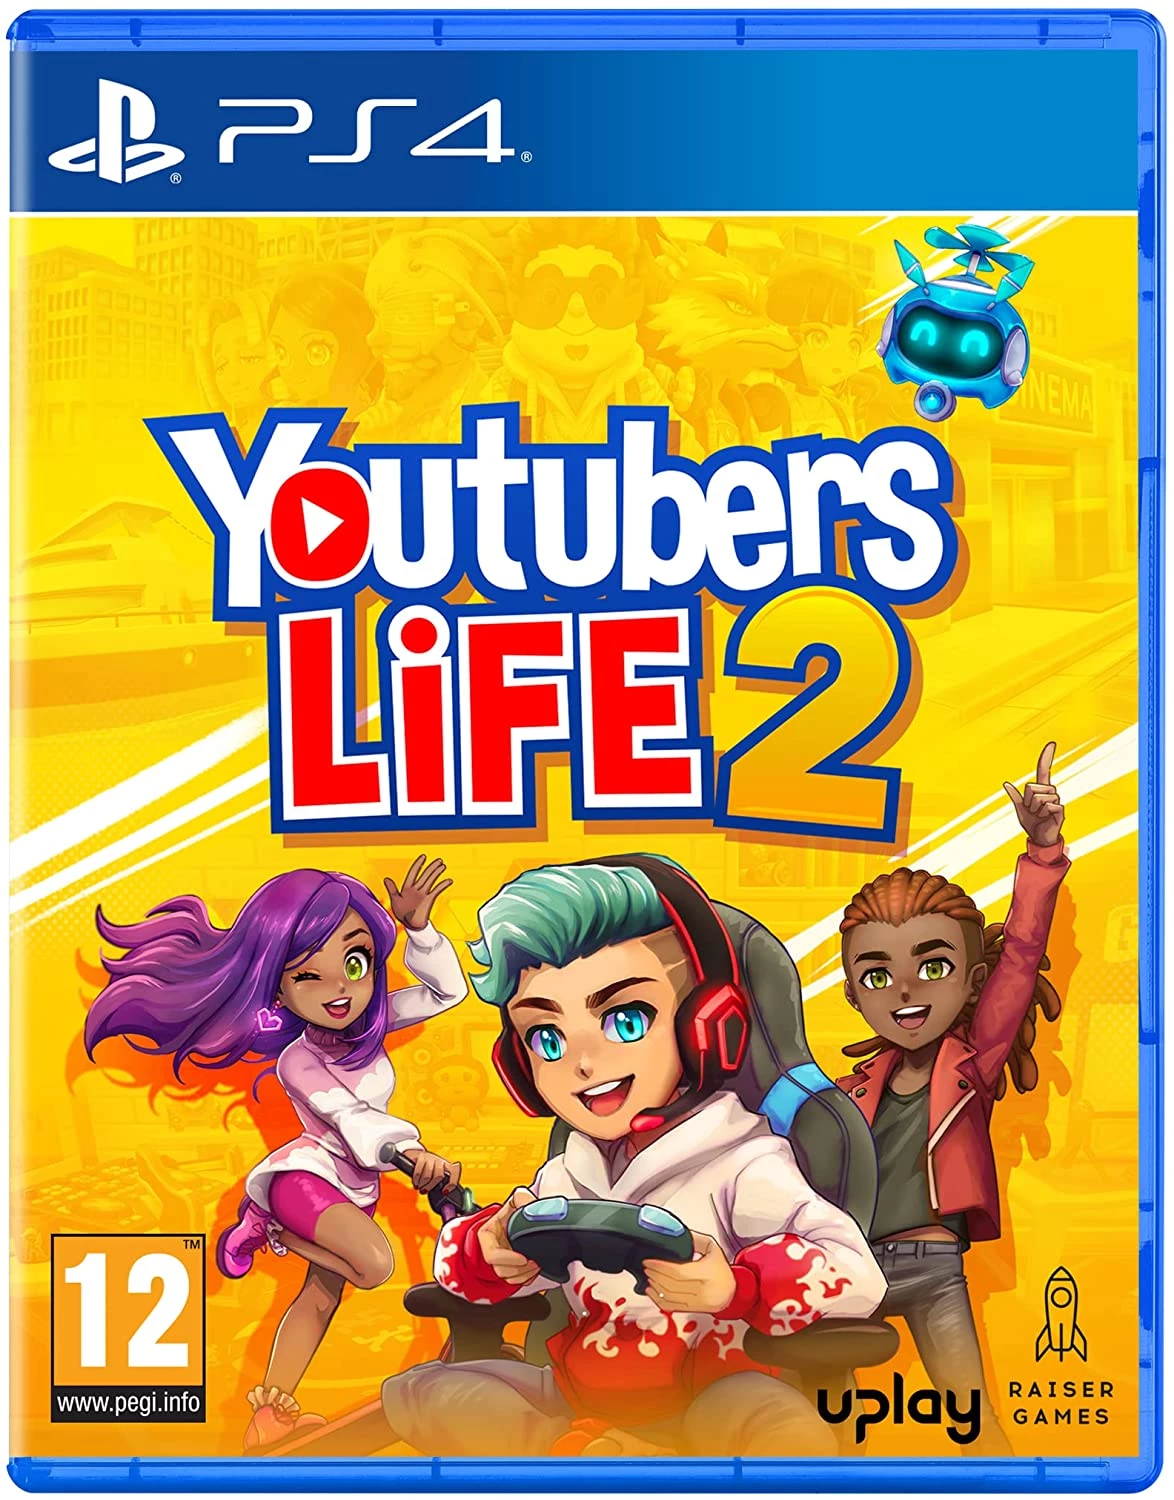 Youtubers Life 2 voor de PlayStation 4 preorder plaatsen op nedgame.nl